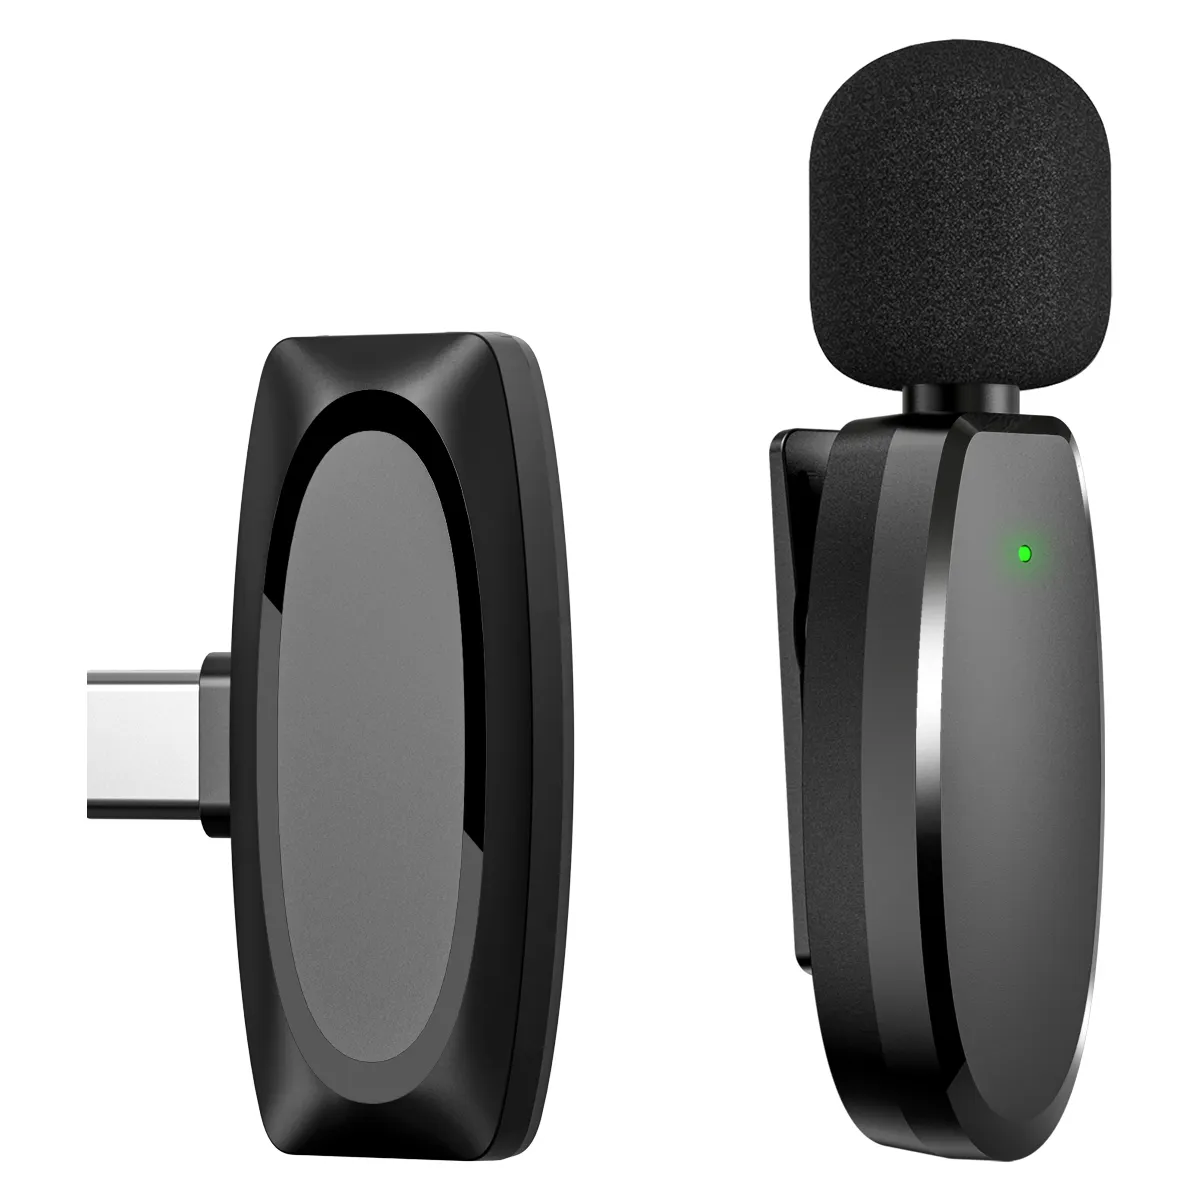 VIMAI الأكثر مبيعًا ميكروفون صغير للصوت تسجيل ومقابلات ميكروفون لاسلكي Lavalier طية صدر السترة نظام ميكروفون للهاتف الذكي